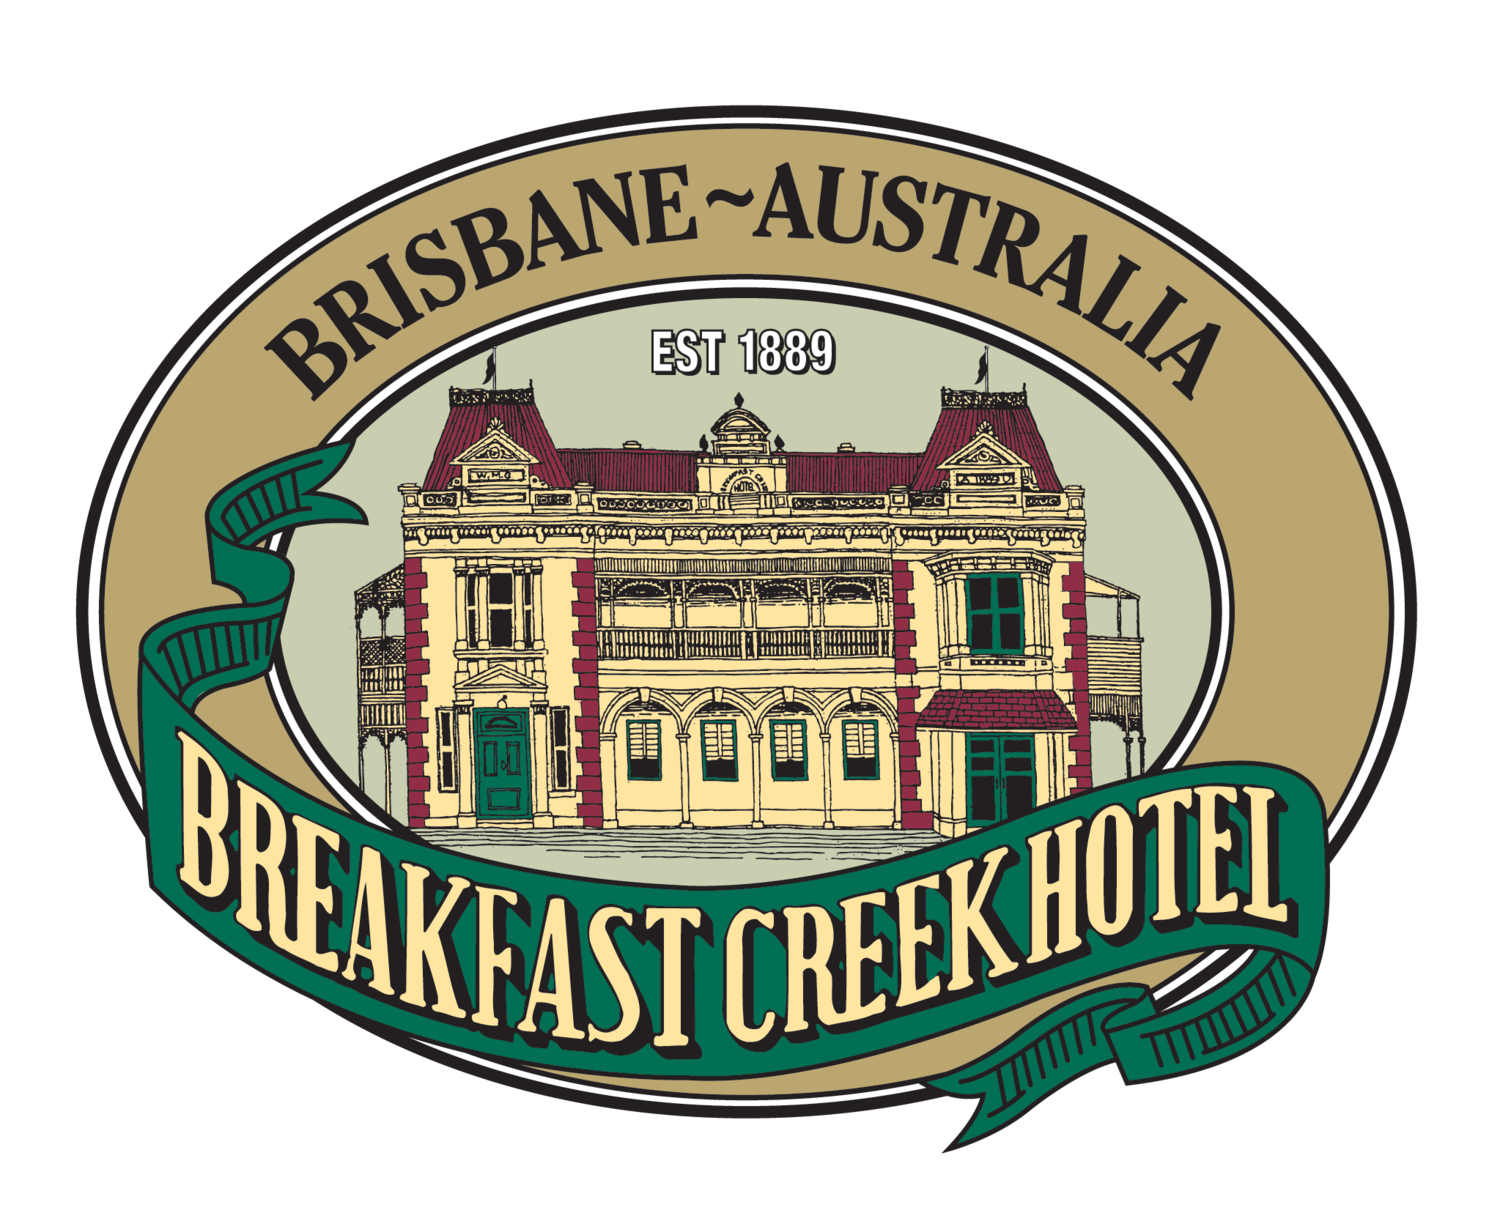 Breakfast Creek Hotel, Breakfast Creek, QLD